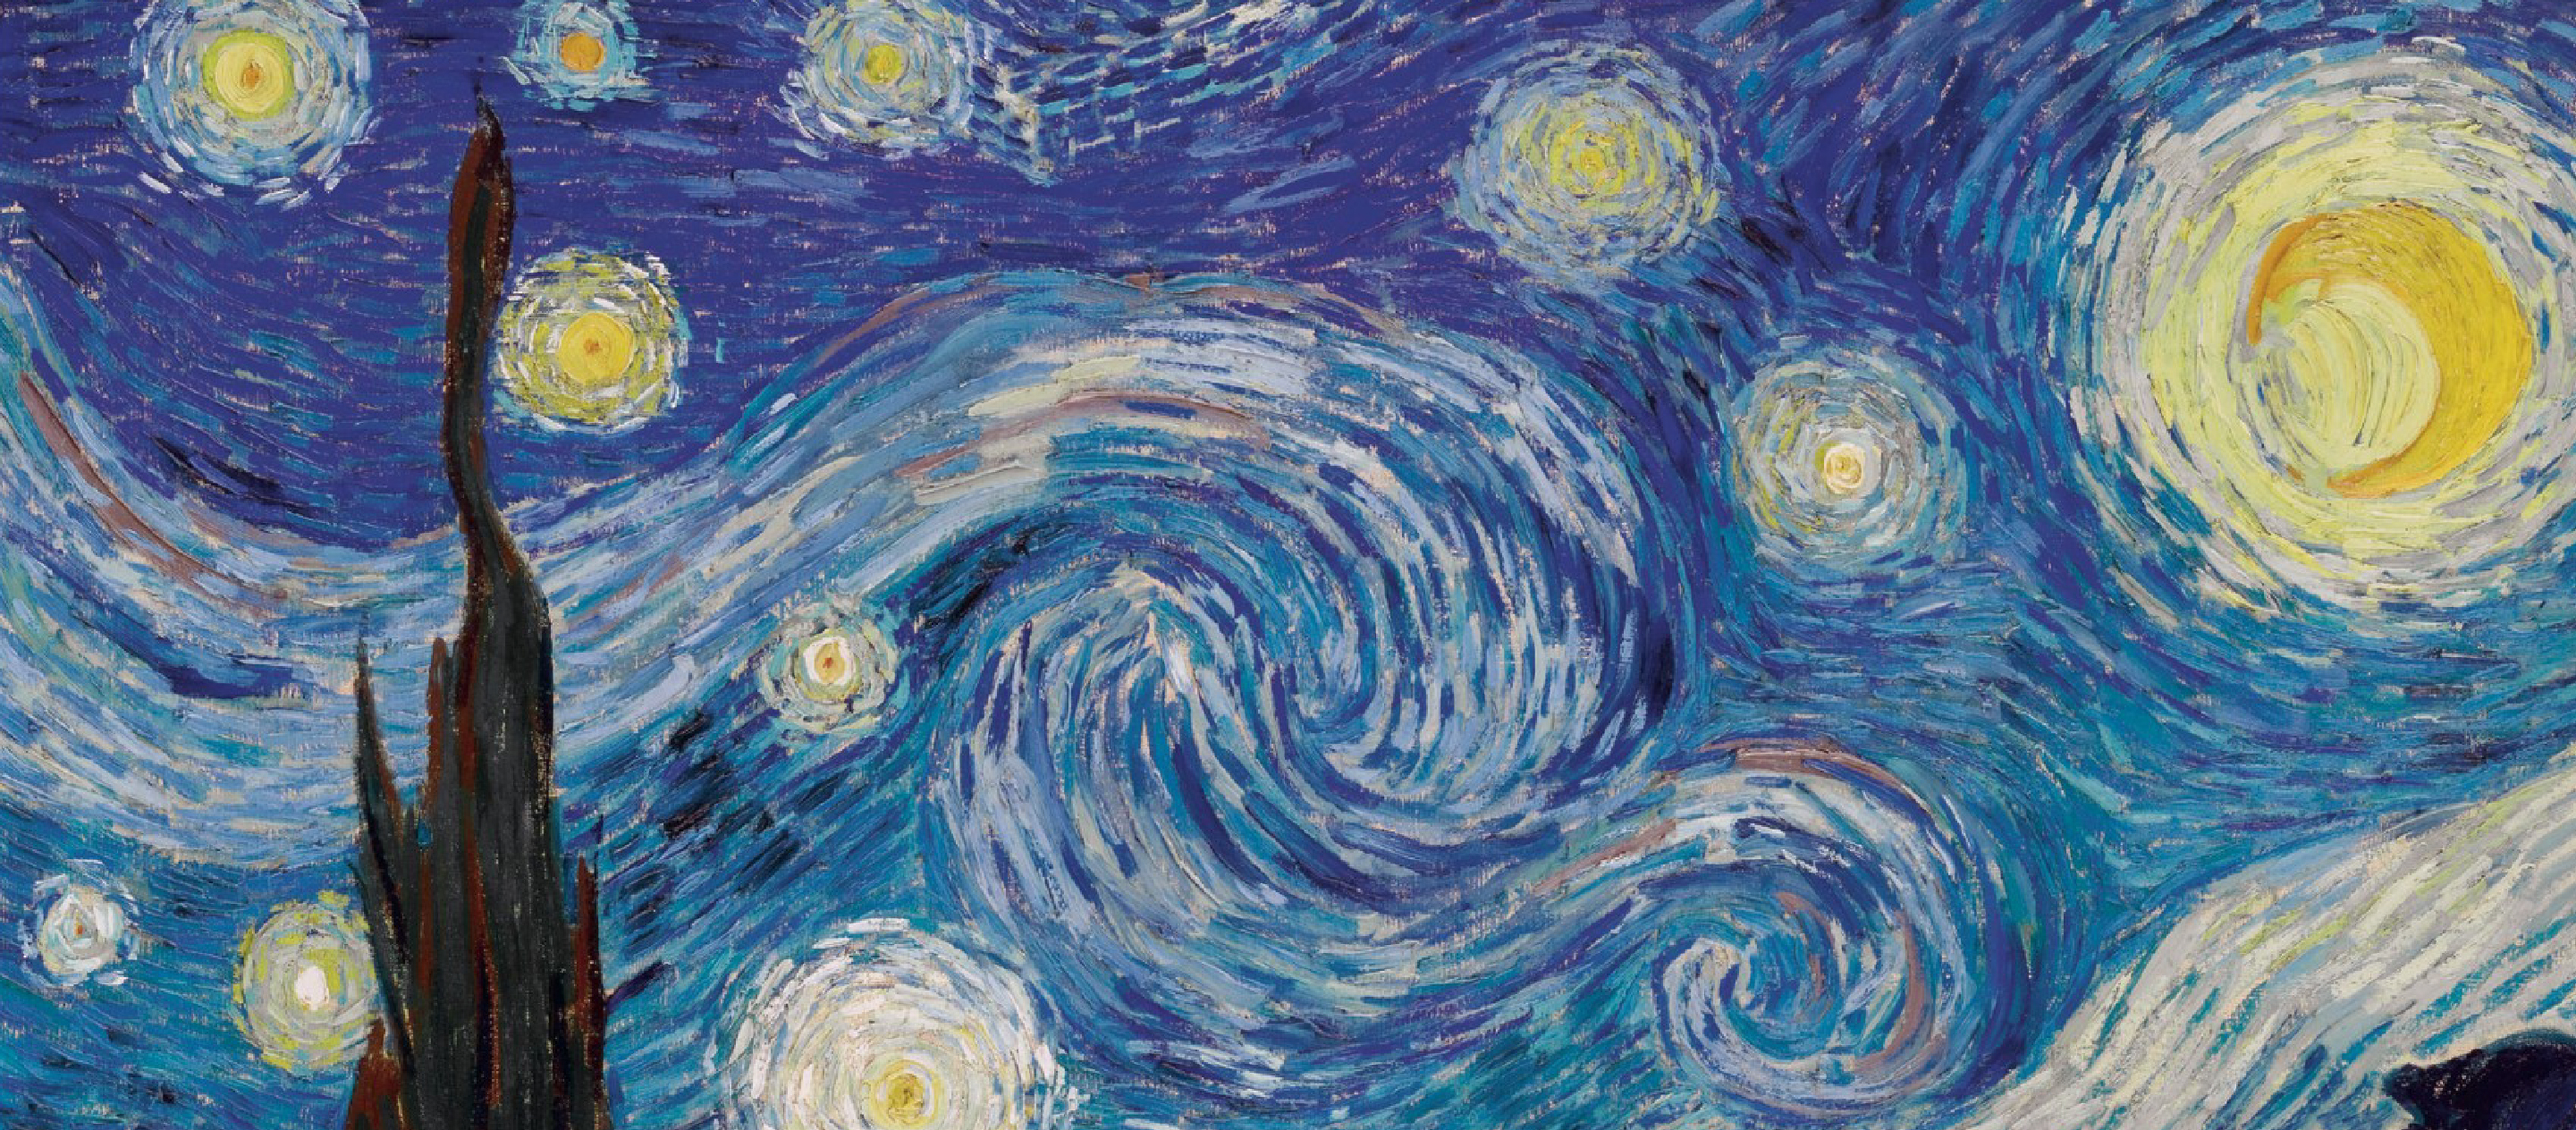 Van Gogh Museum ลมหายใจของแวน โกะห์ผ่านภาพวาดที่สร้างแรงบันดาลใจให้มีความหวังในวันข้างหน้า